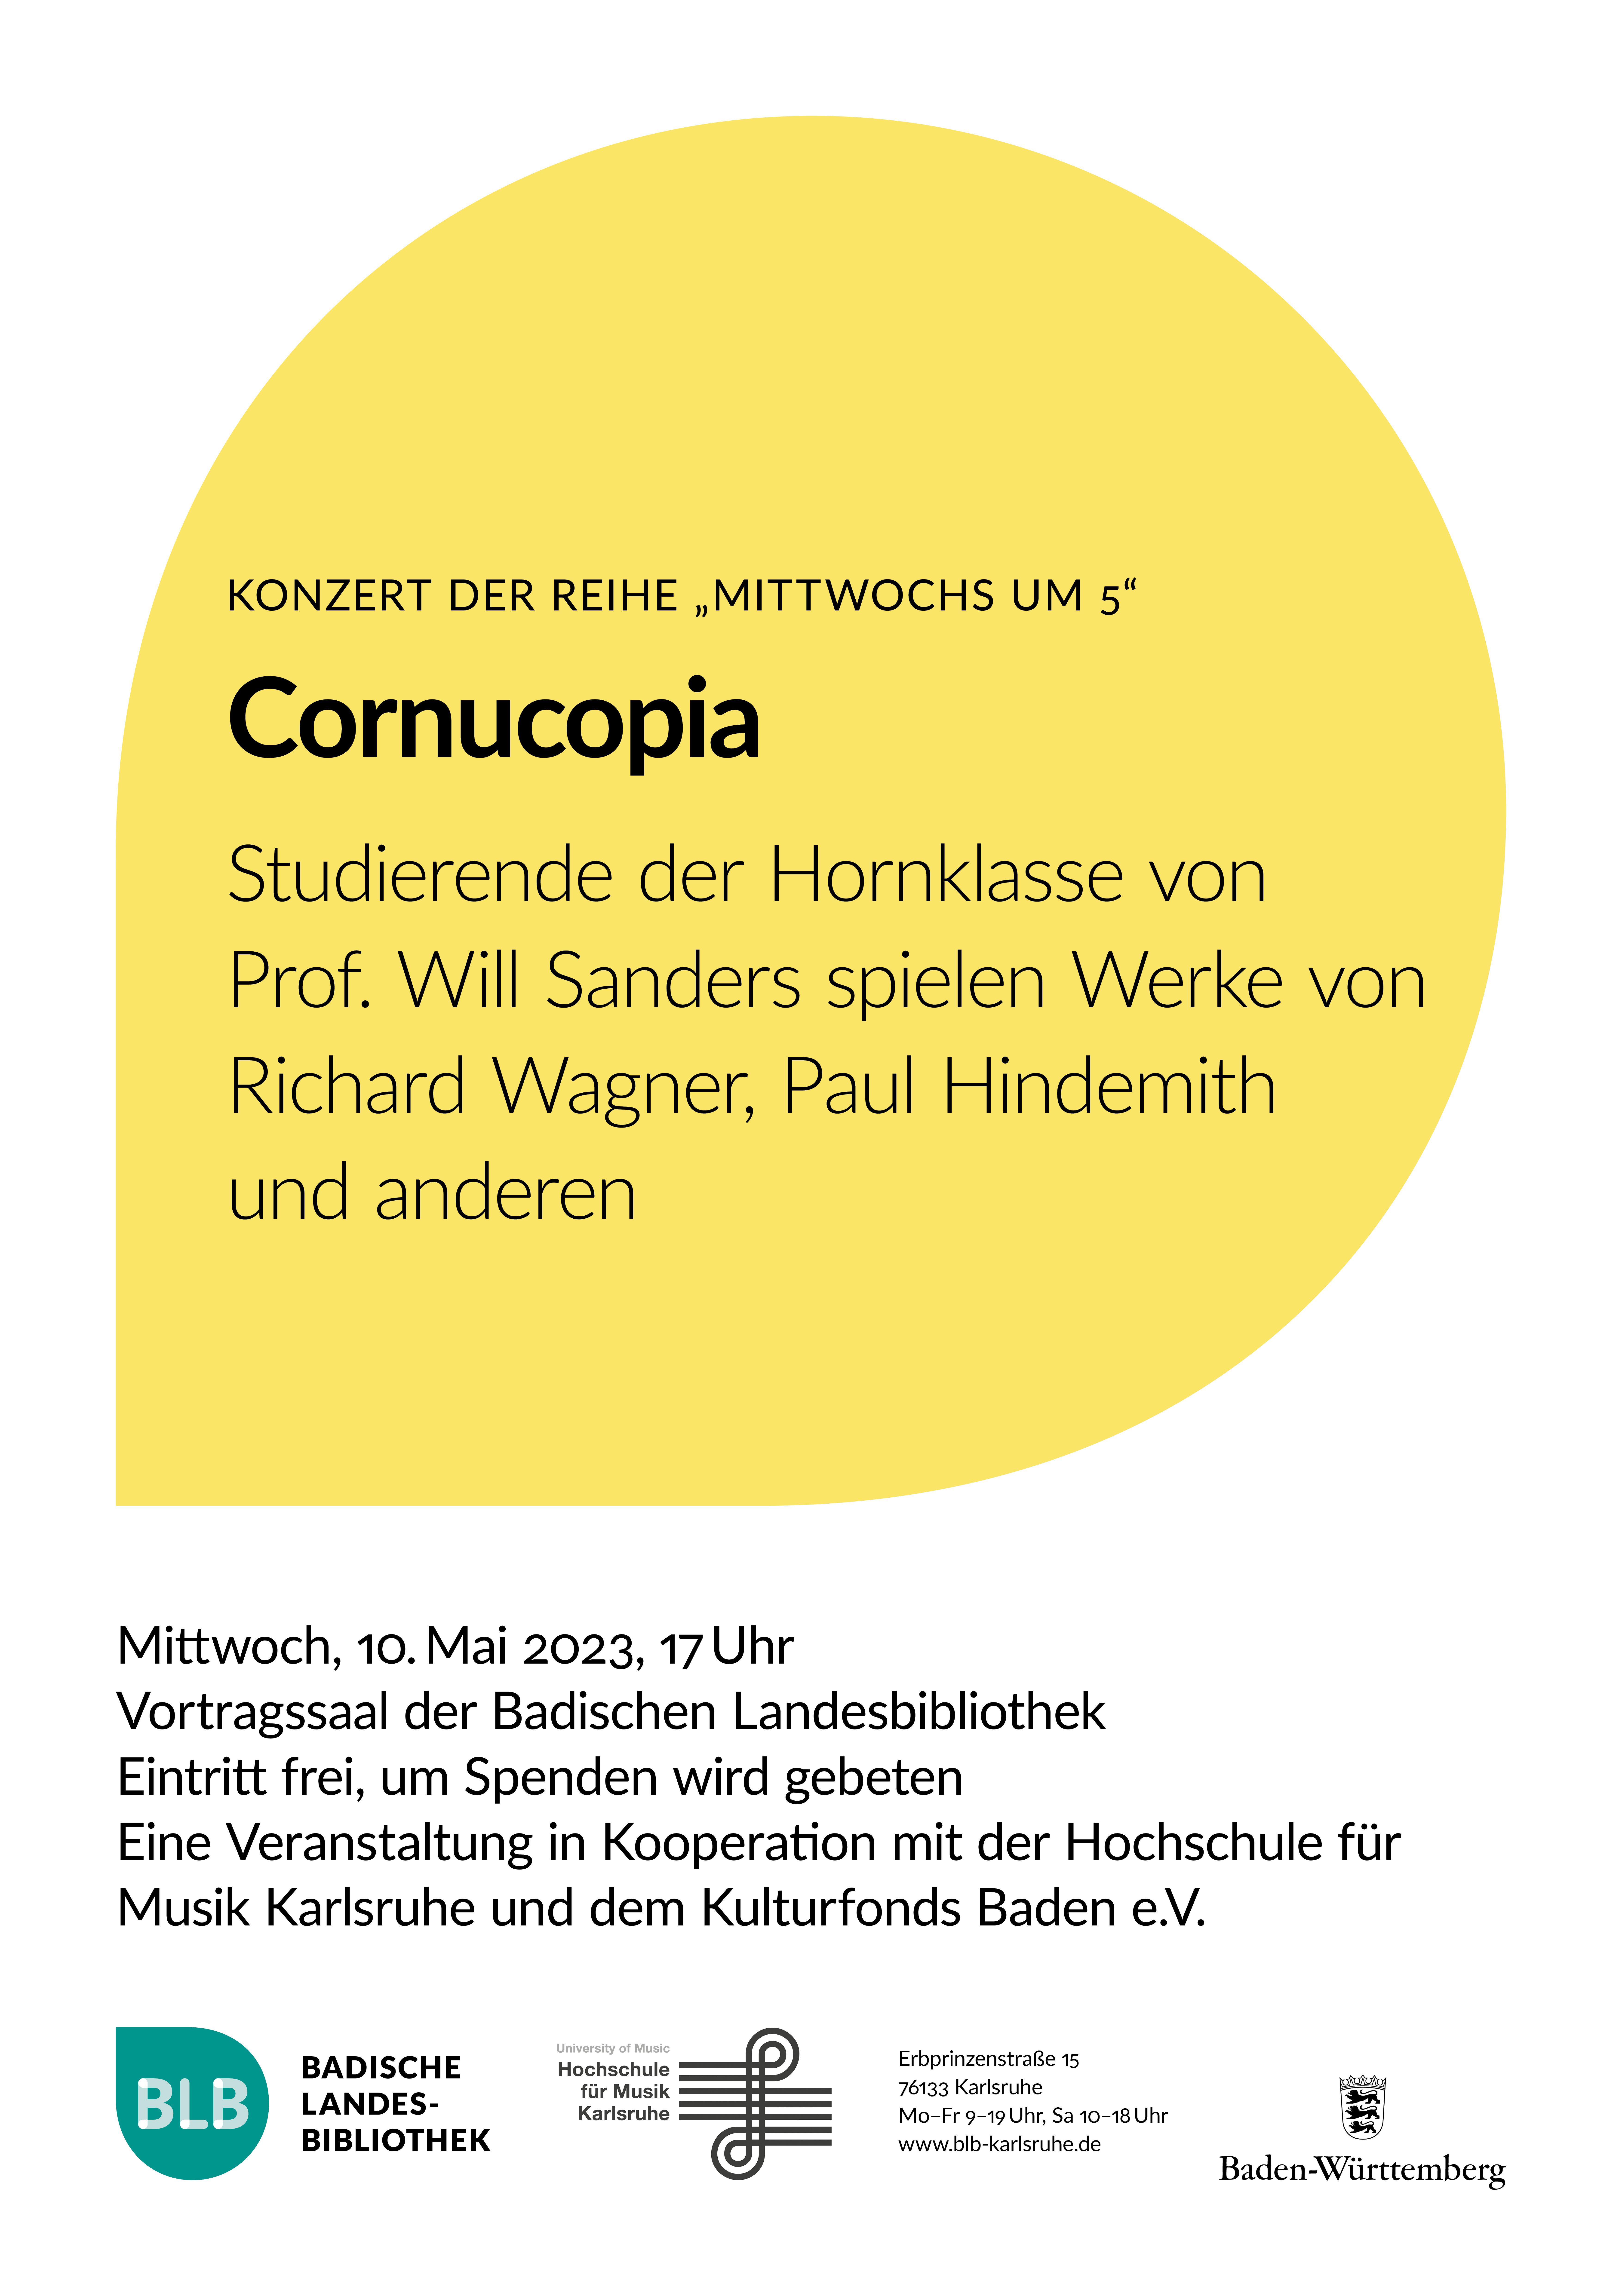 Zu sehen ist ein gelbes Monogon mit der Aufschrift "Cornucopia", ein Konzert der Reihe Mittwochs um 5. Es spielen Studierende der Hornklasse von Professor Will Sanders. Das Konzert findet am Mittwoch, den 10. Mai 2023 um 17 Uhr statt. 